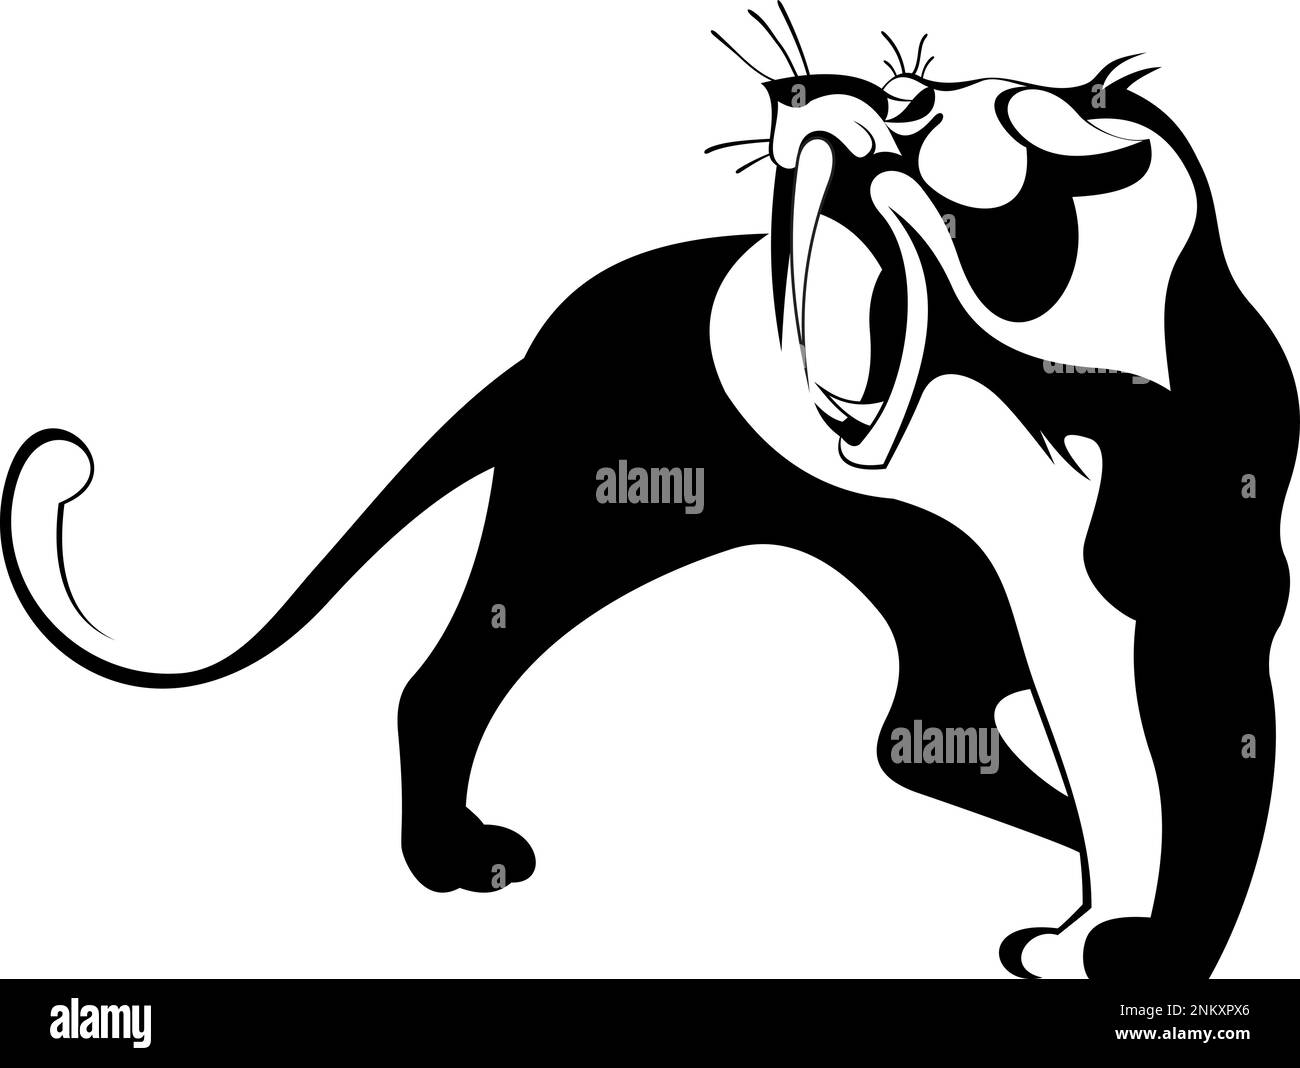 Tiger, lion or panther original art illustration. Fierce tiger, lion or panther black on white original illustration Stock Vector